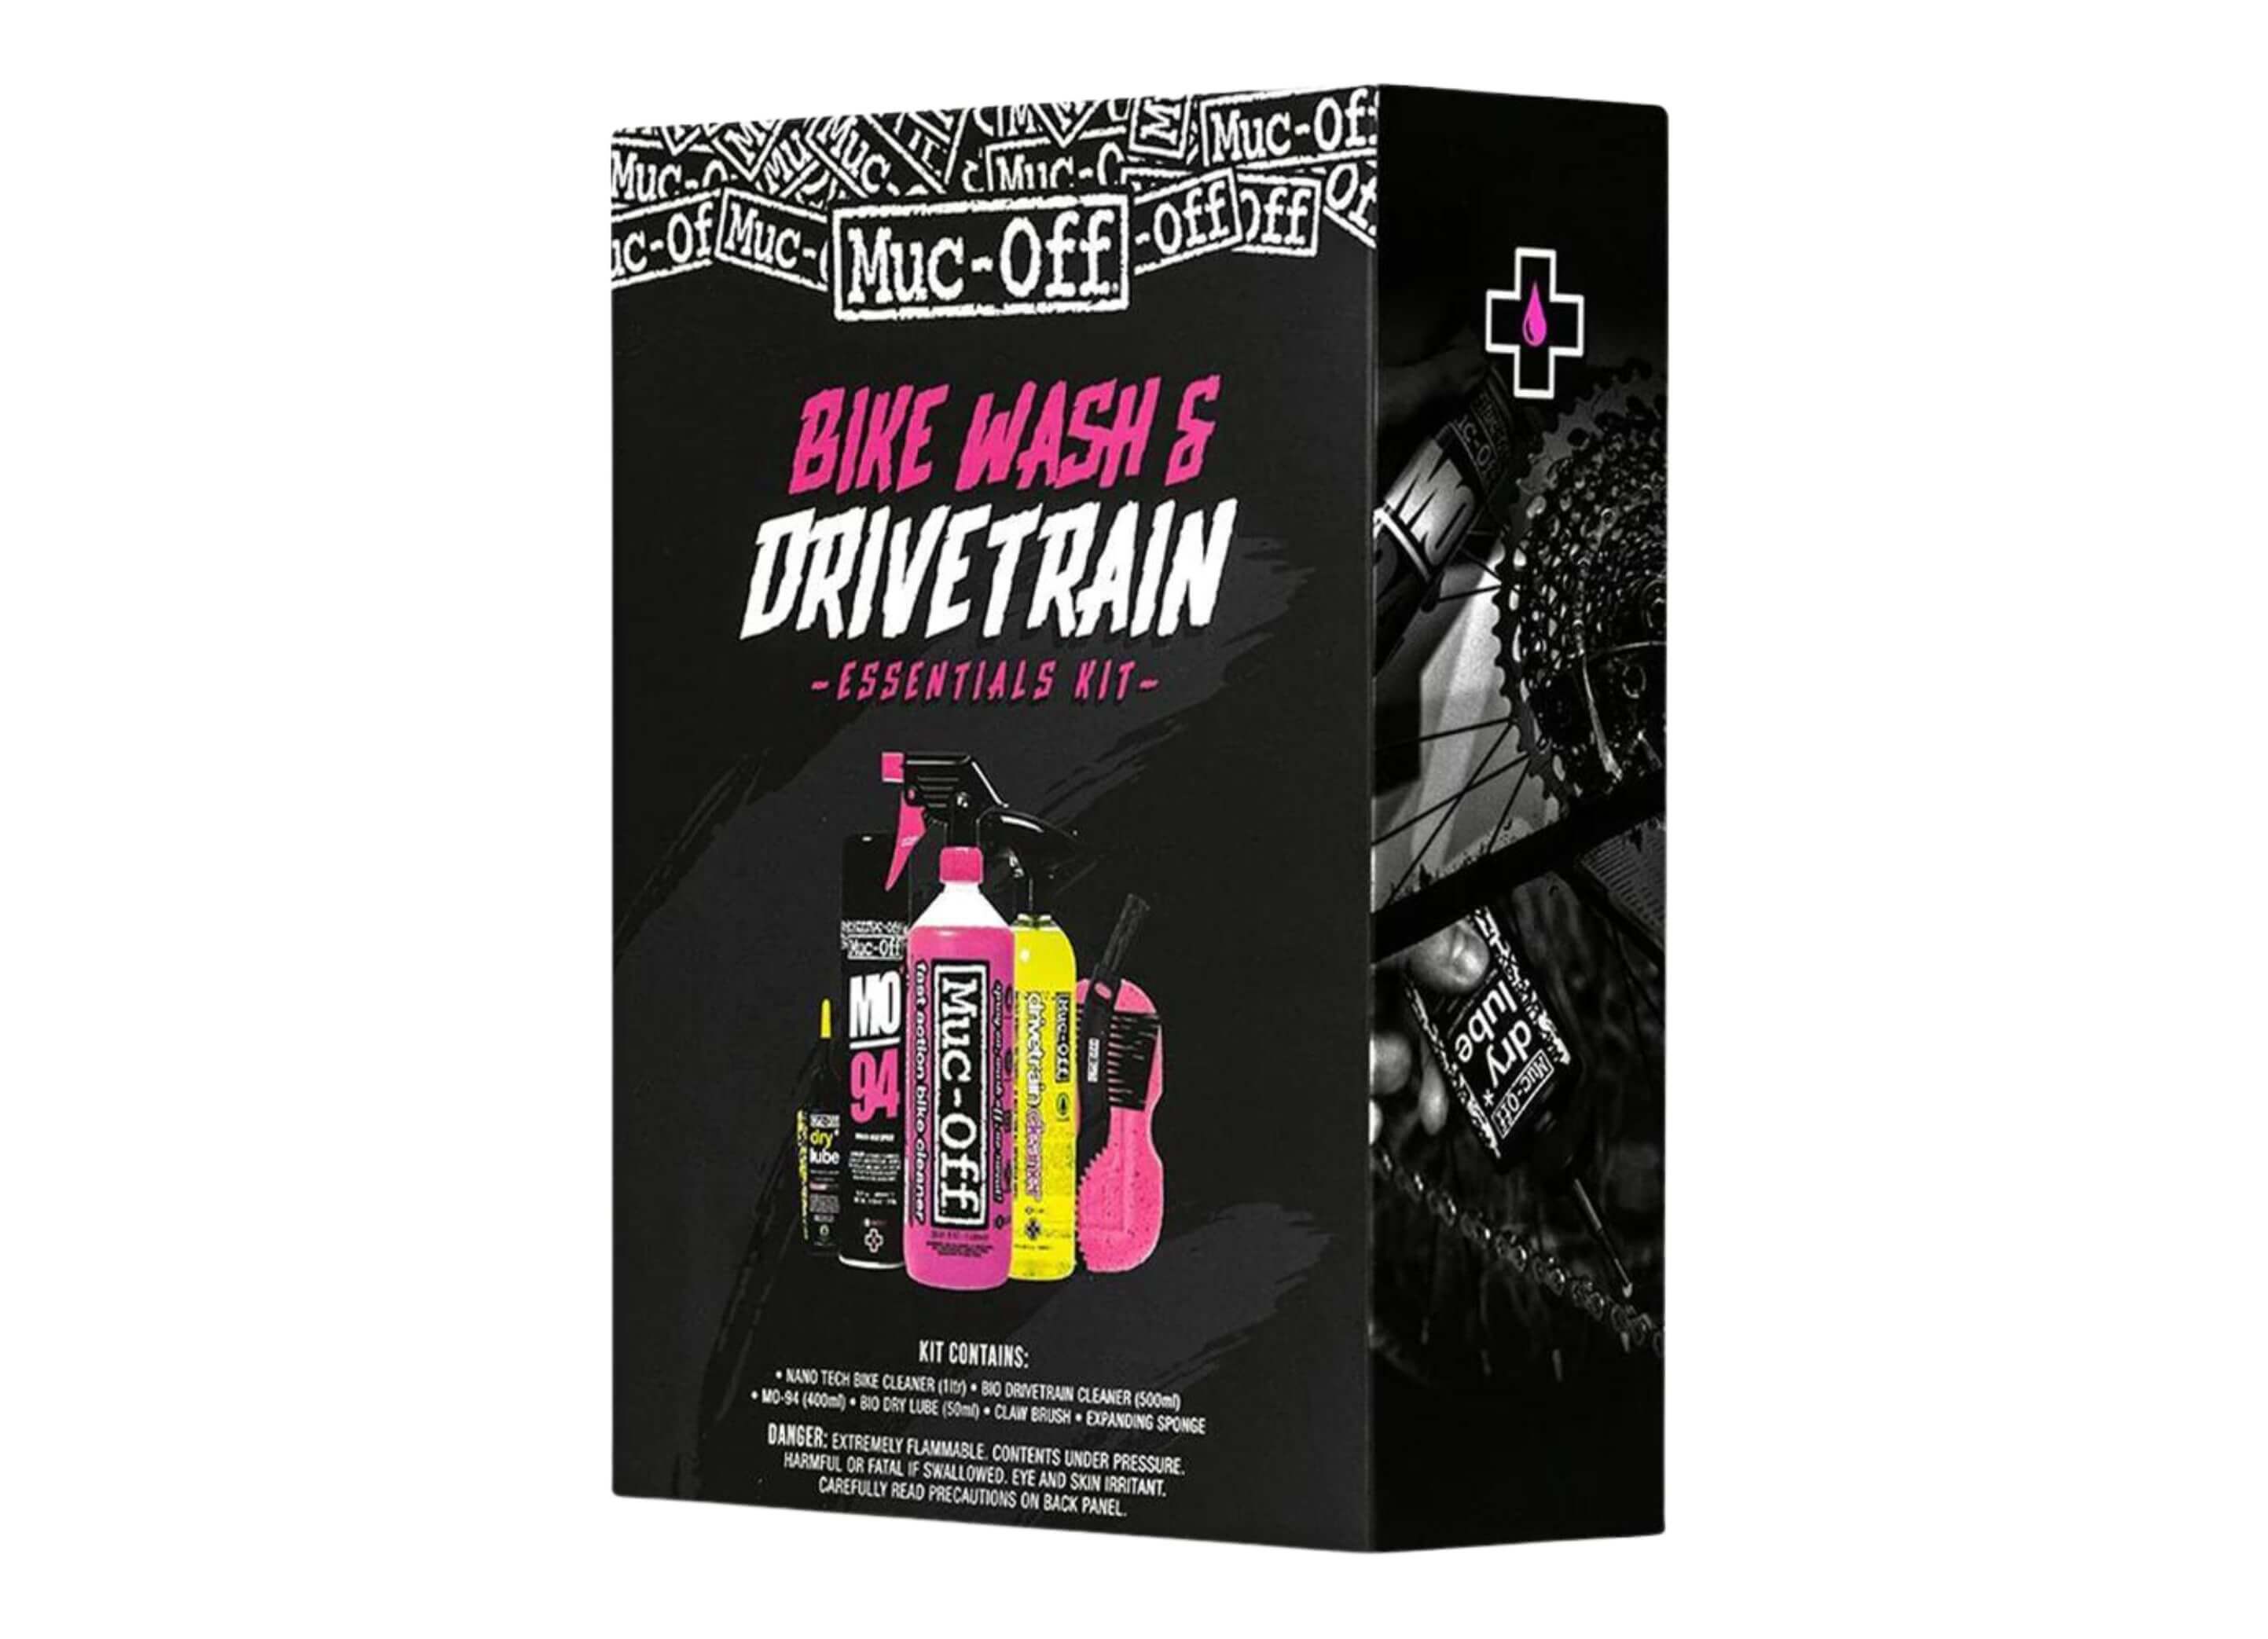 Muc-Off Bike Wash & Drivetrain Essentials Kit